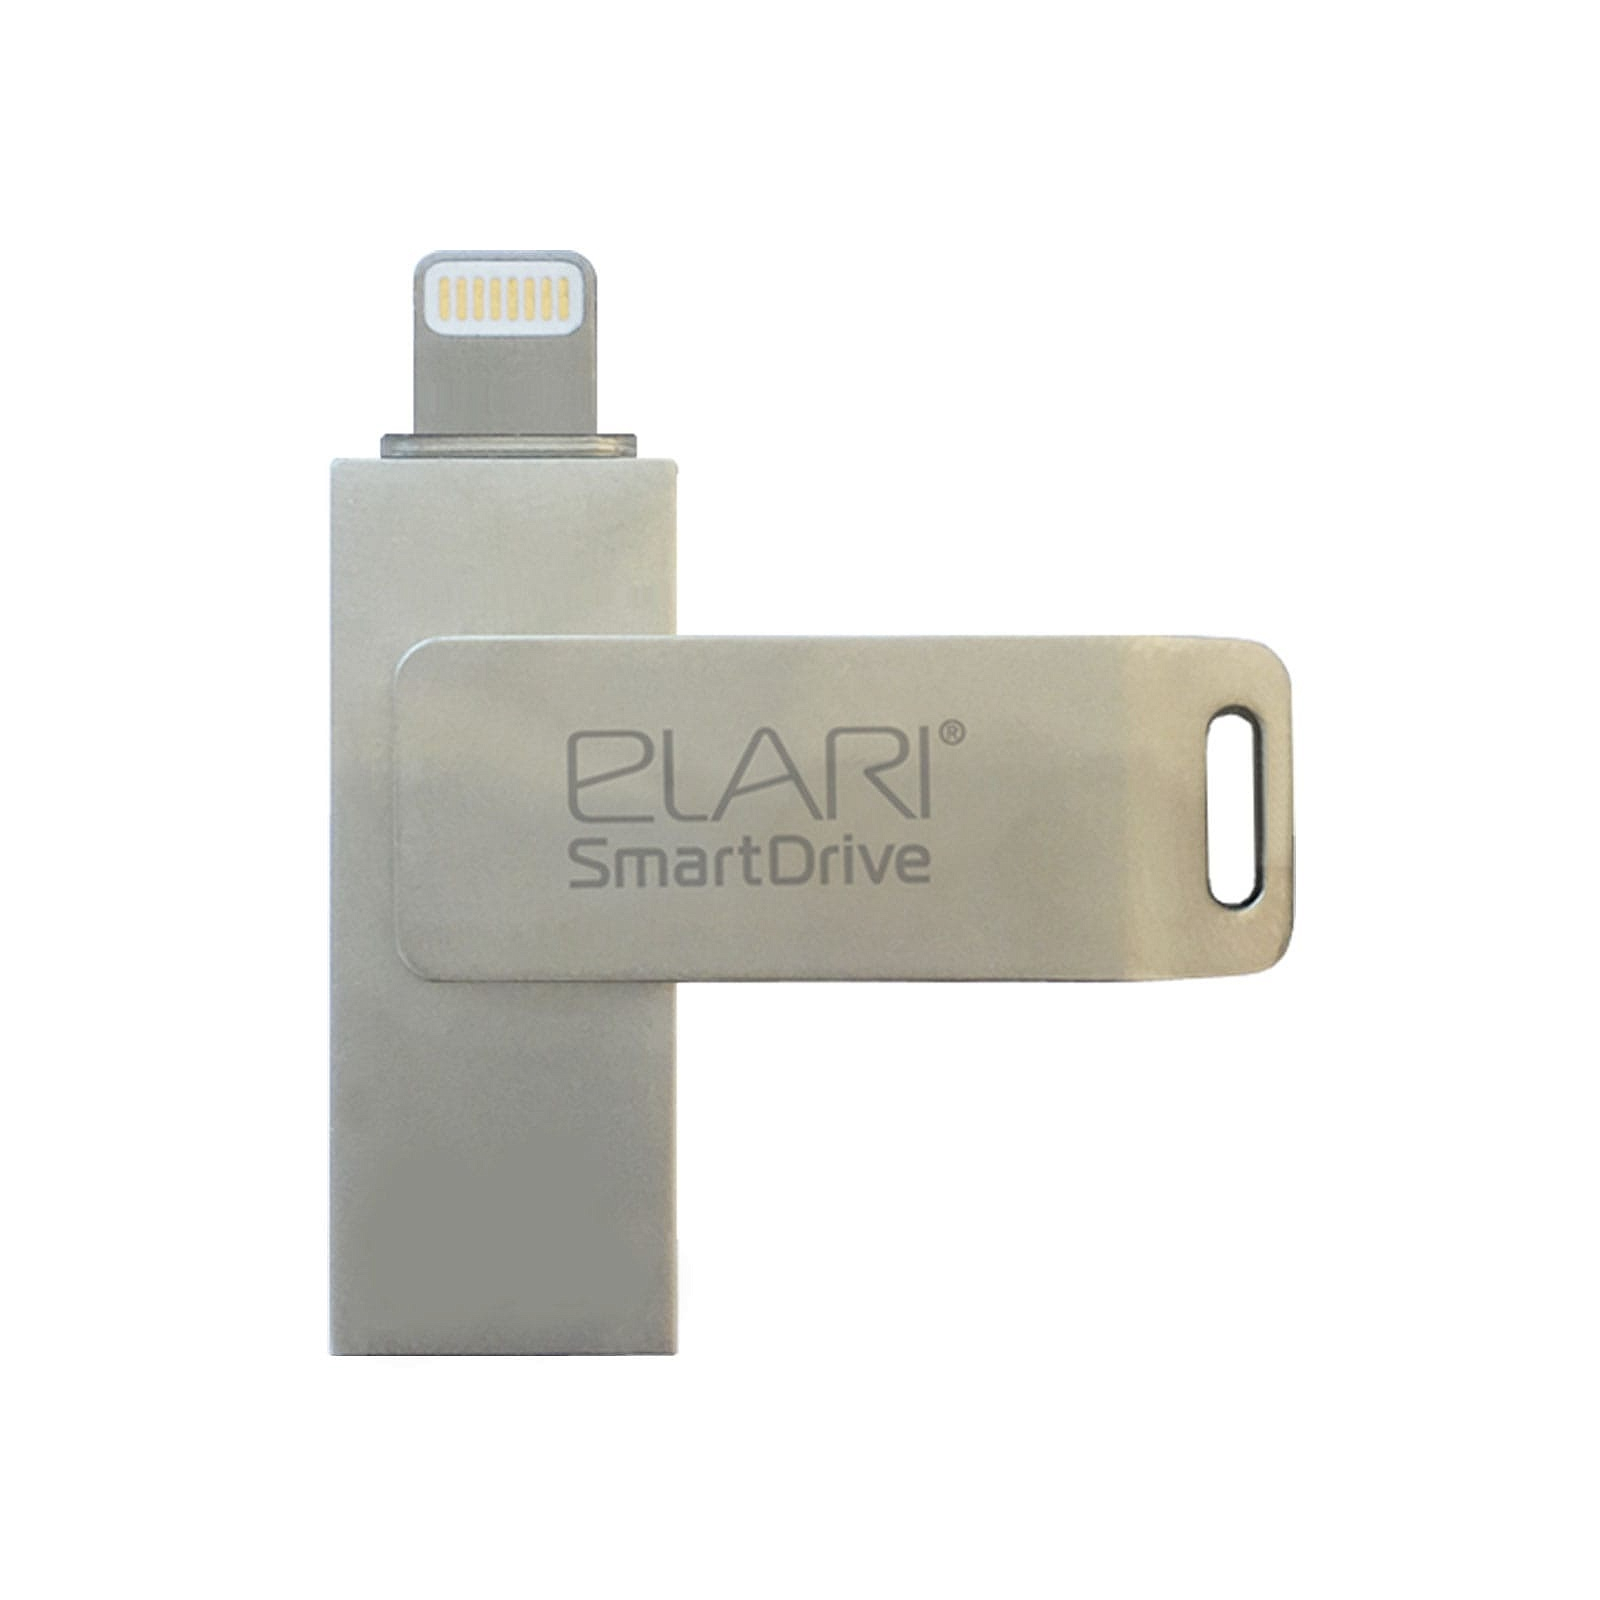 USB флеш накопитель Elari 16GB SmartDrive Silver USB 3.0/Lightning (ELSD16GB)